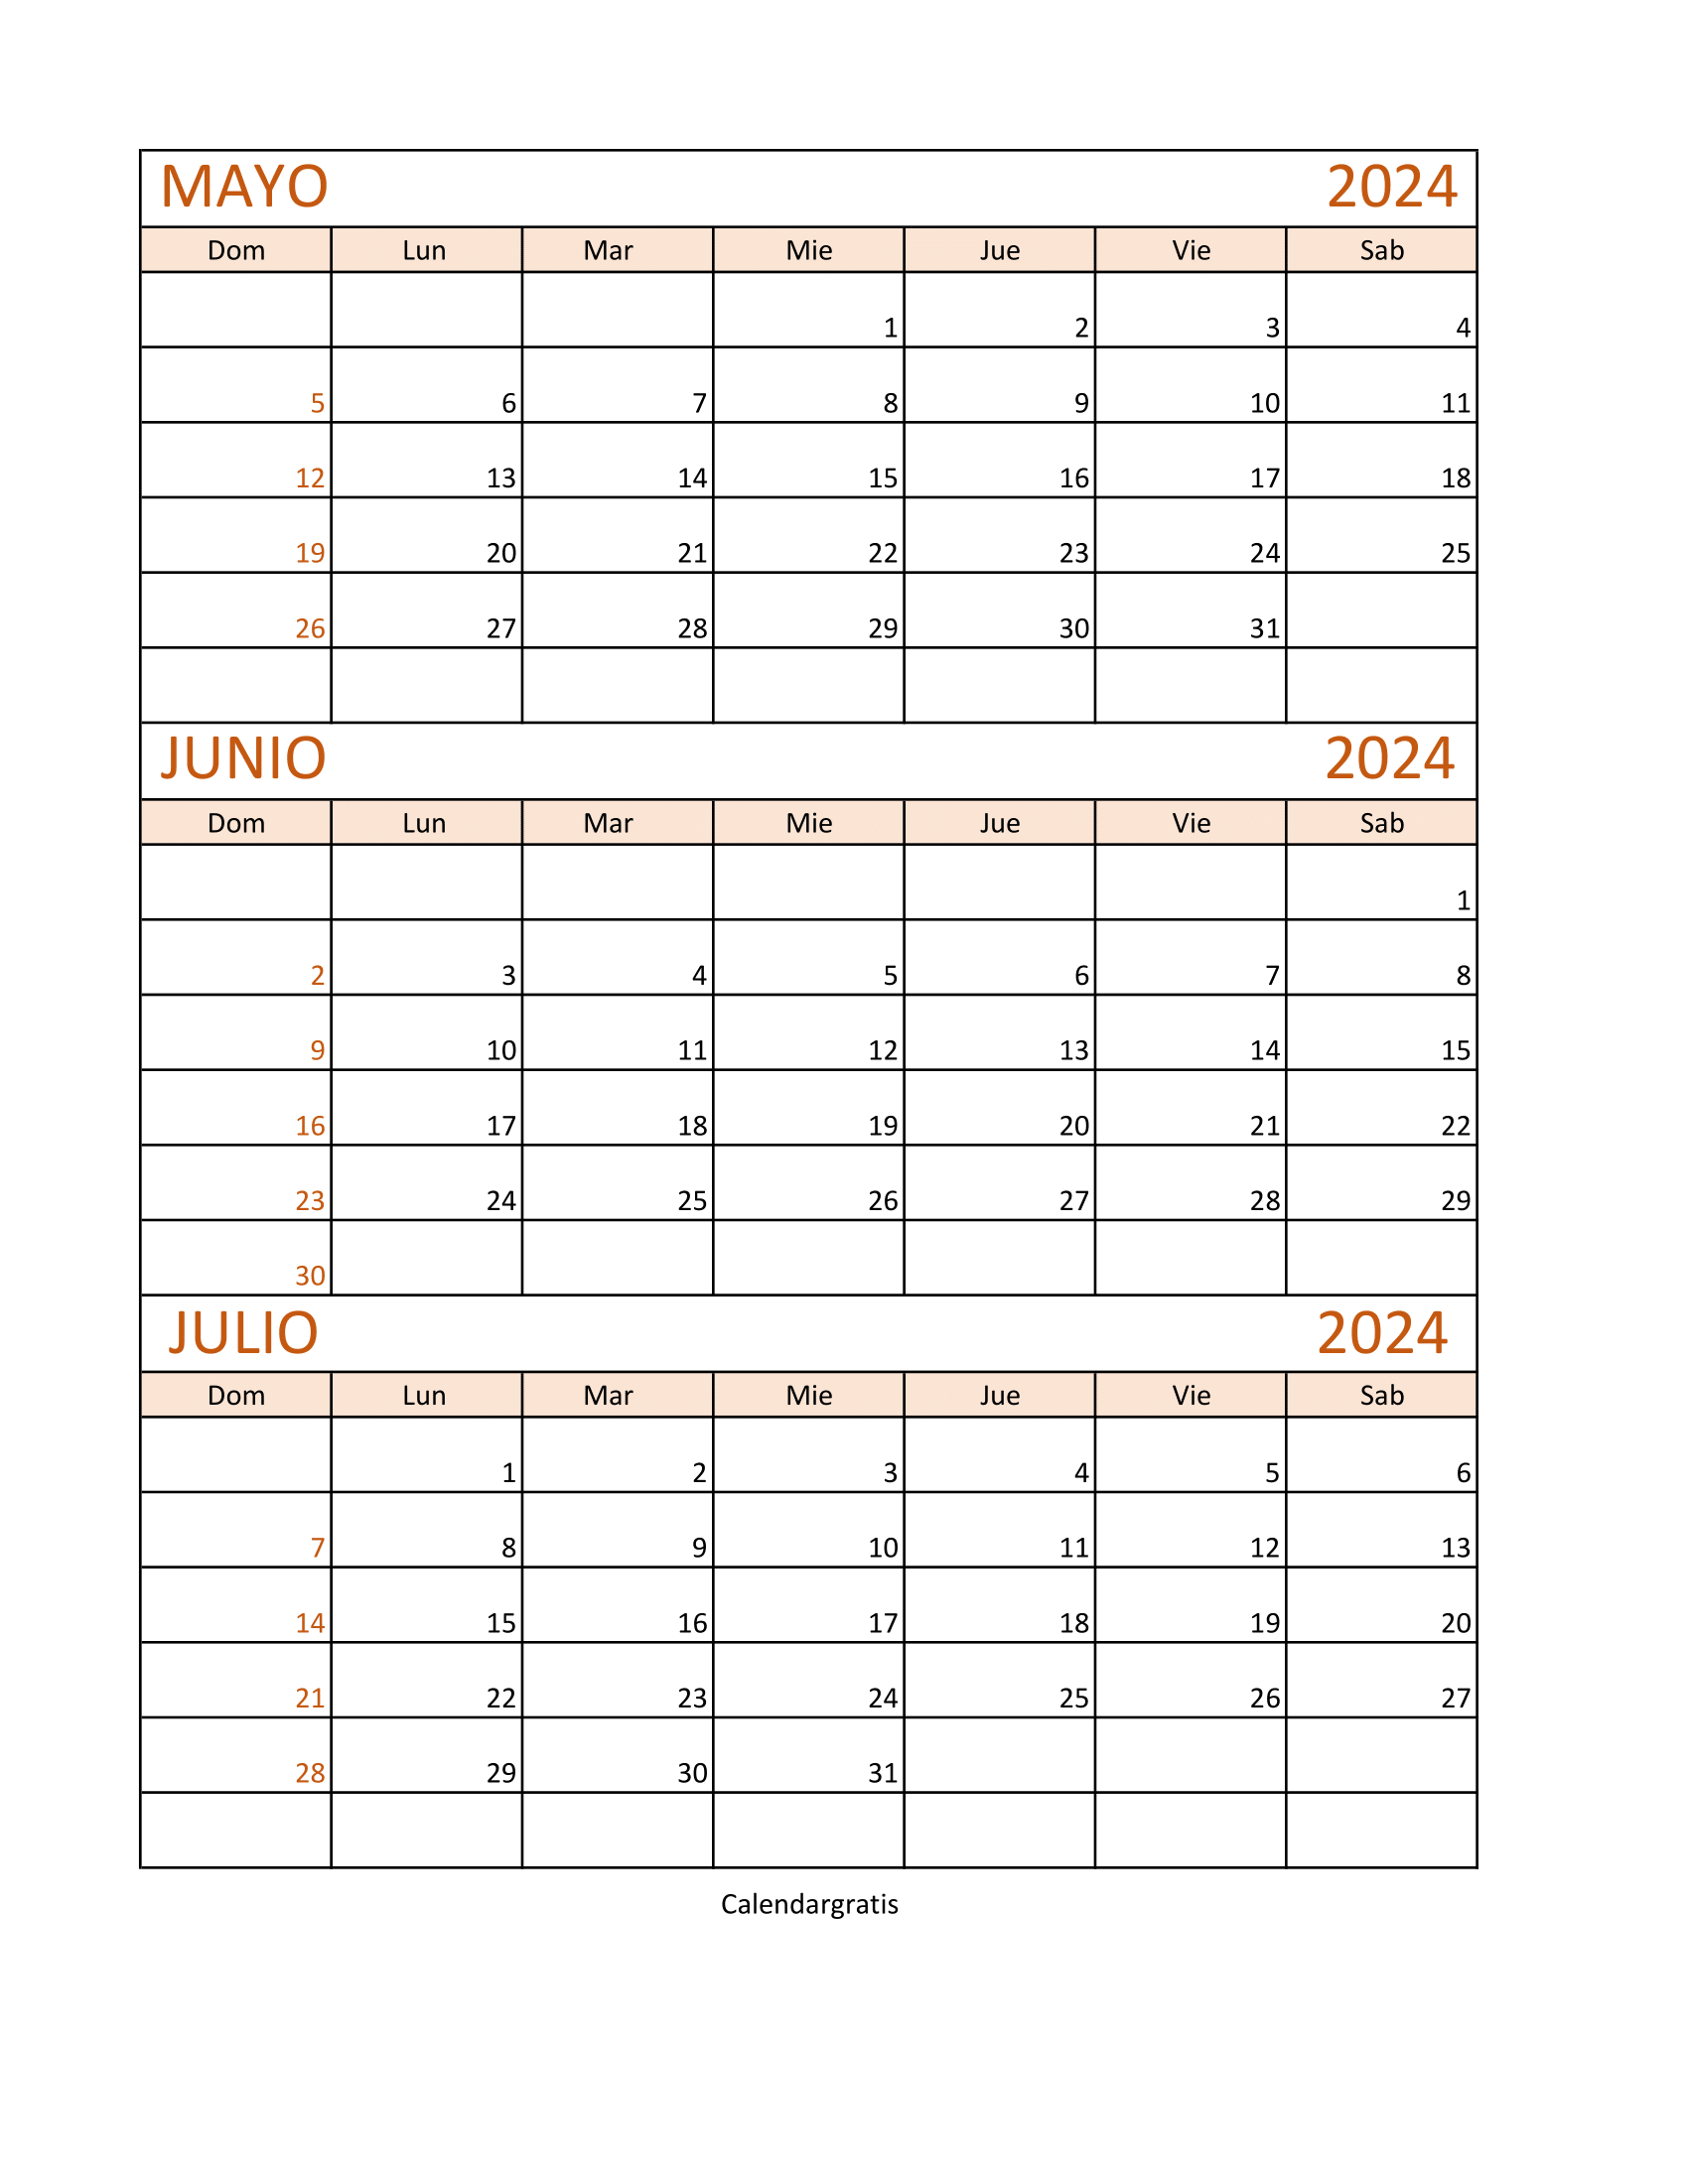 Calendario Mayo Junio y Julio 2024